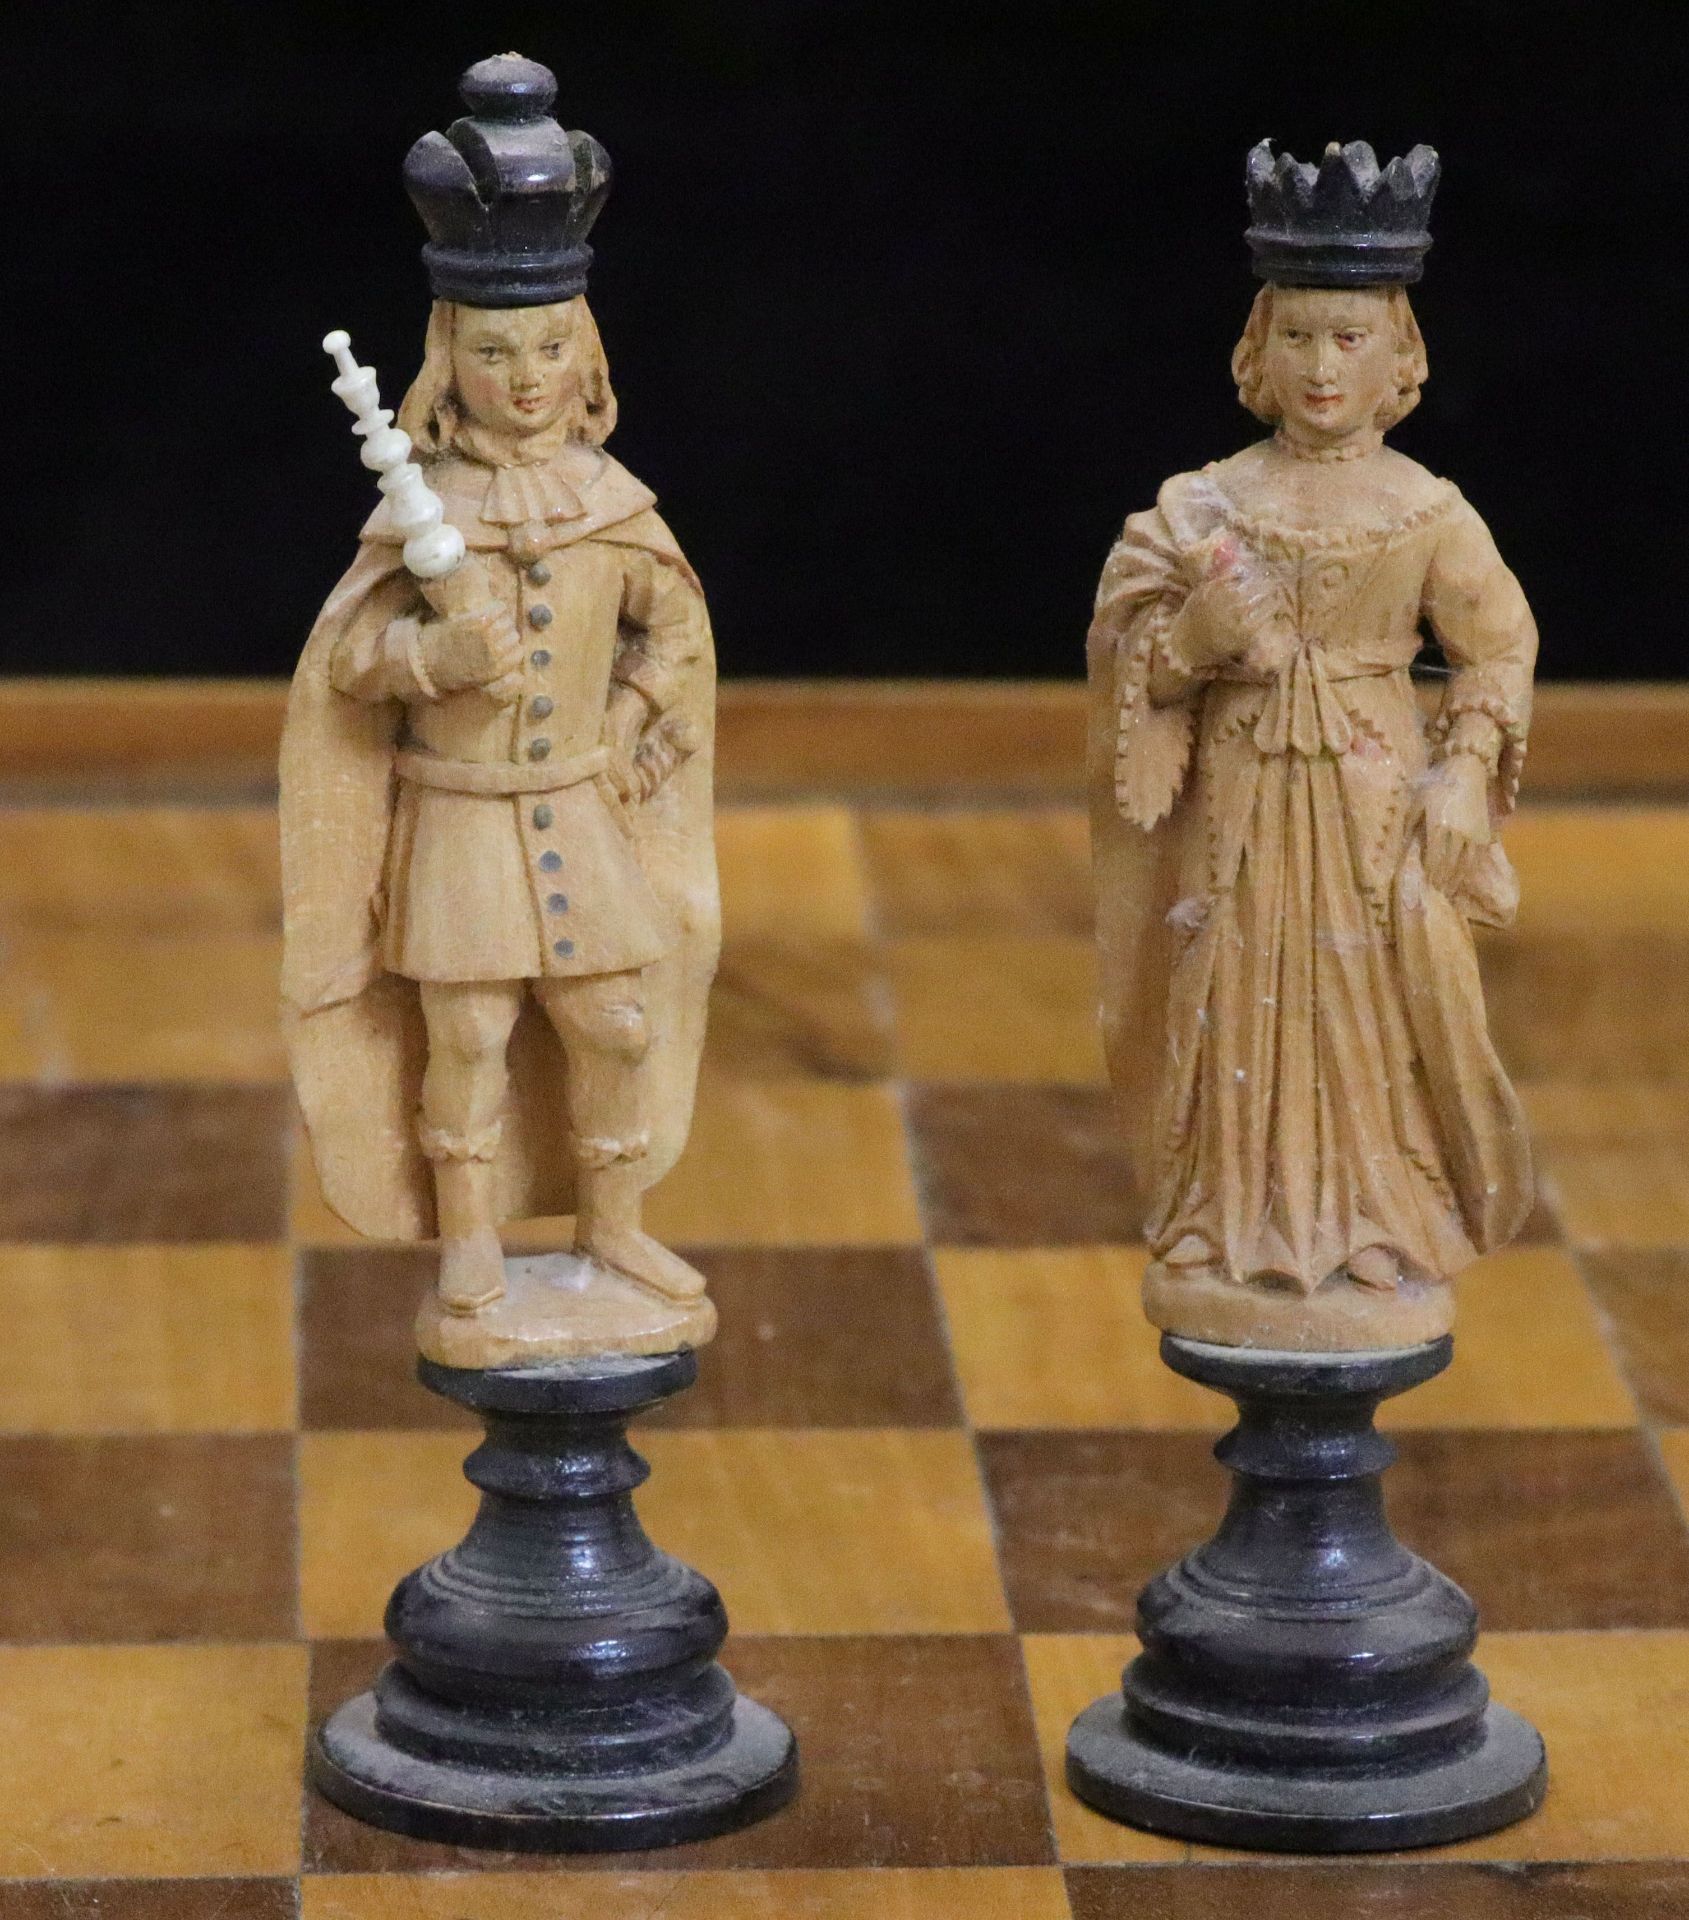 Wohl Frankreich 18./19. Jh., Schachspiel, Holz, geschnitzt, in Kasten mit Schachbrett, eine Figur - Image 4 of 9